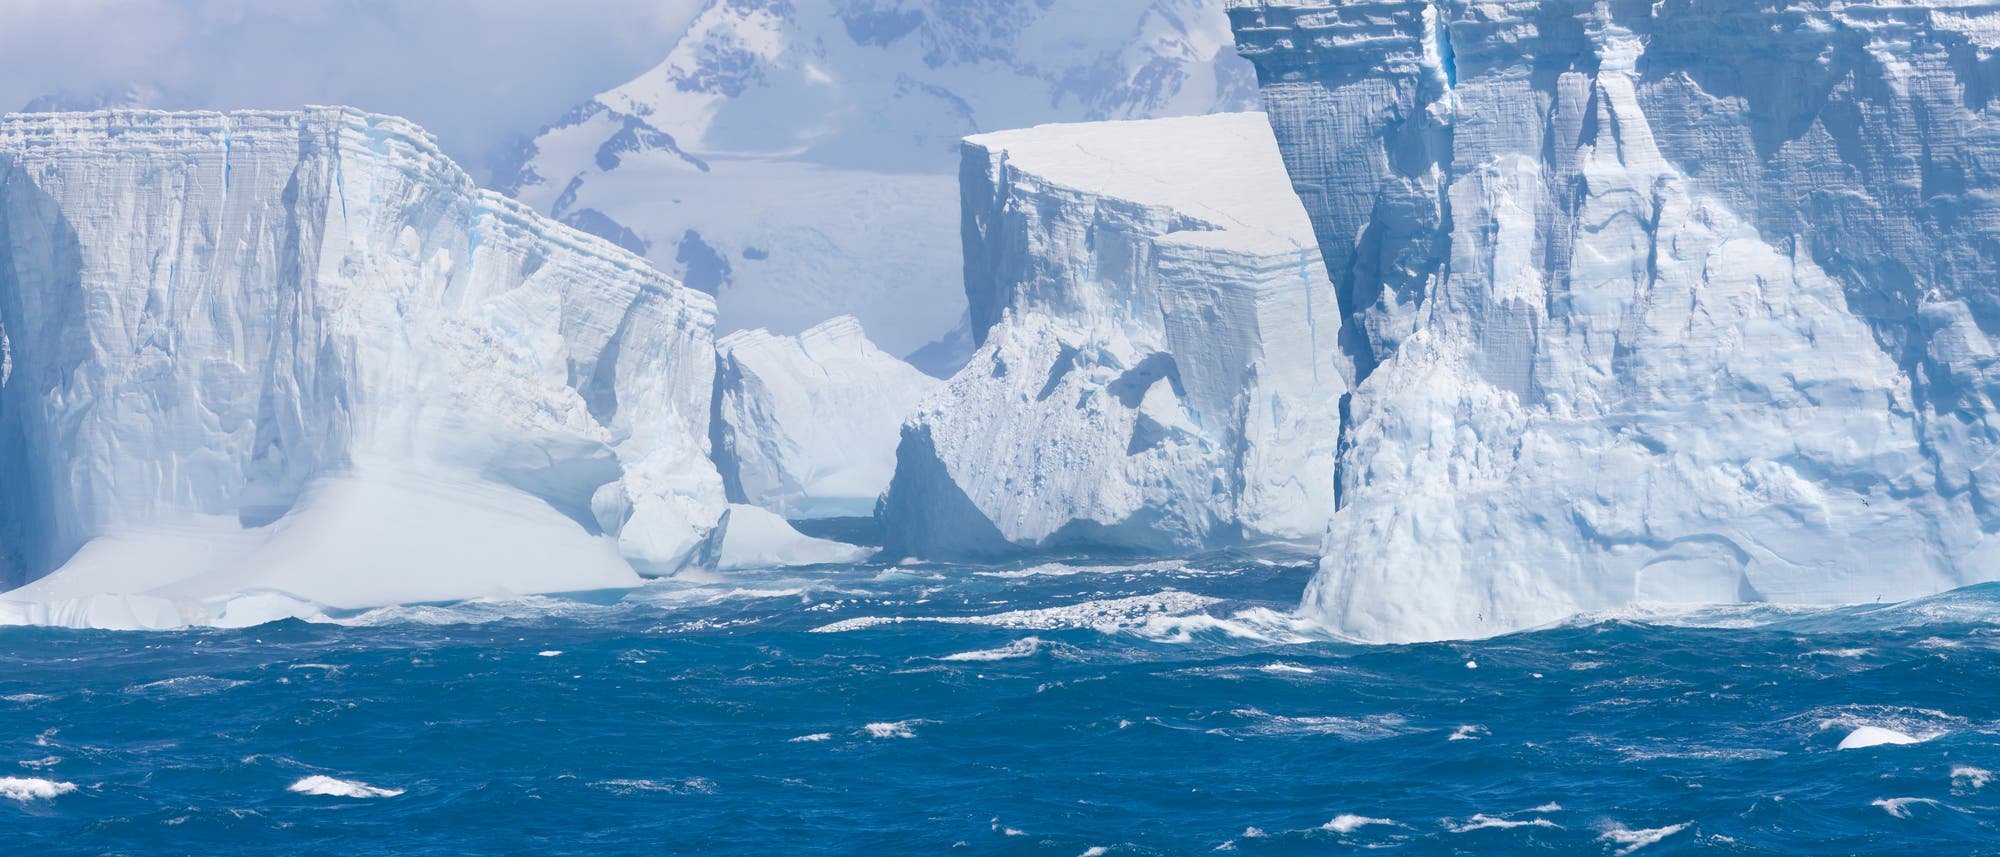 Mehrere große Eisberge mit einer bergigen Küste im Hintergrund.